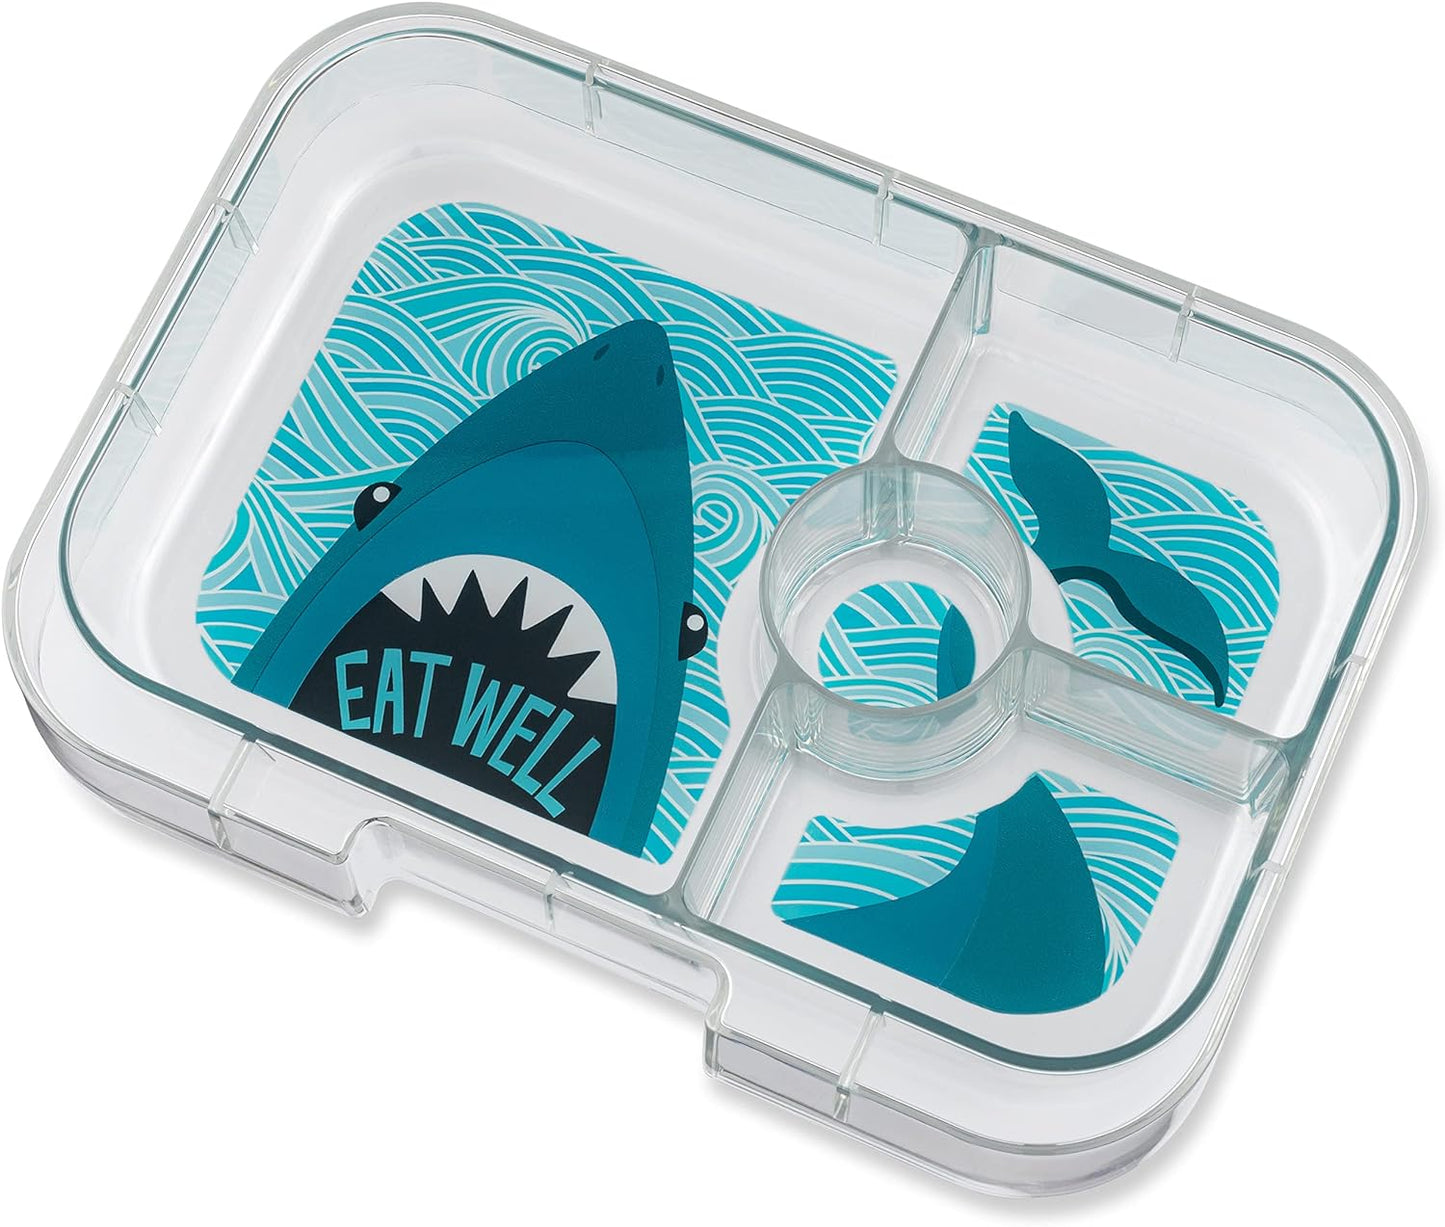 Yumbox Panino 4 Compartment Shark Lunch Box - True Blue - Laadlee